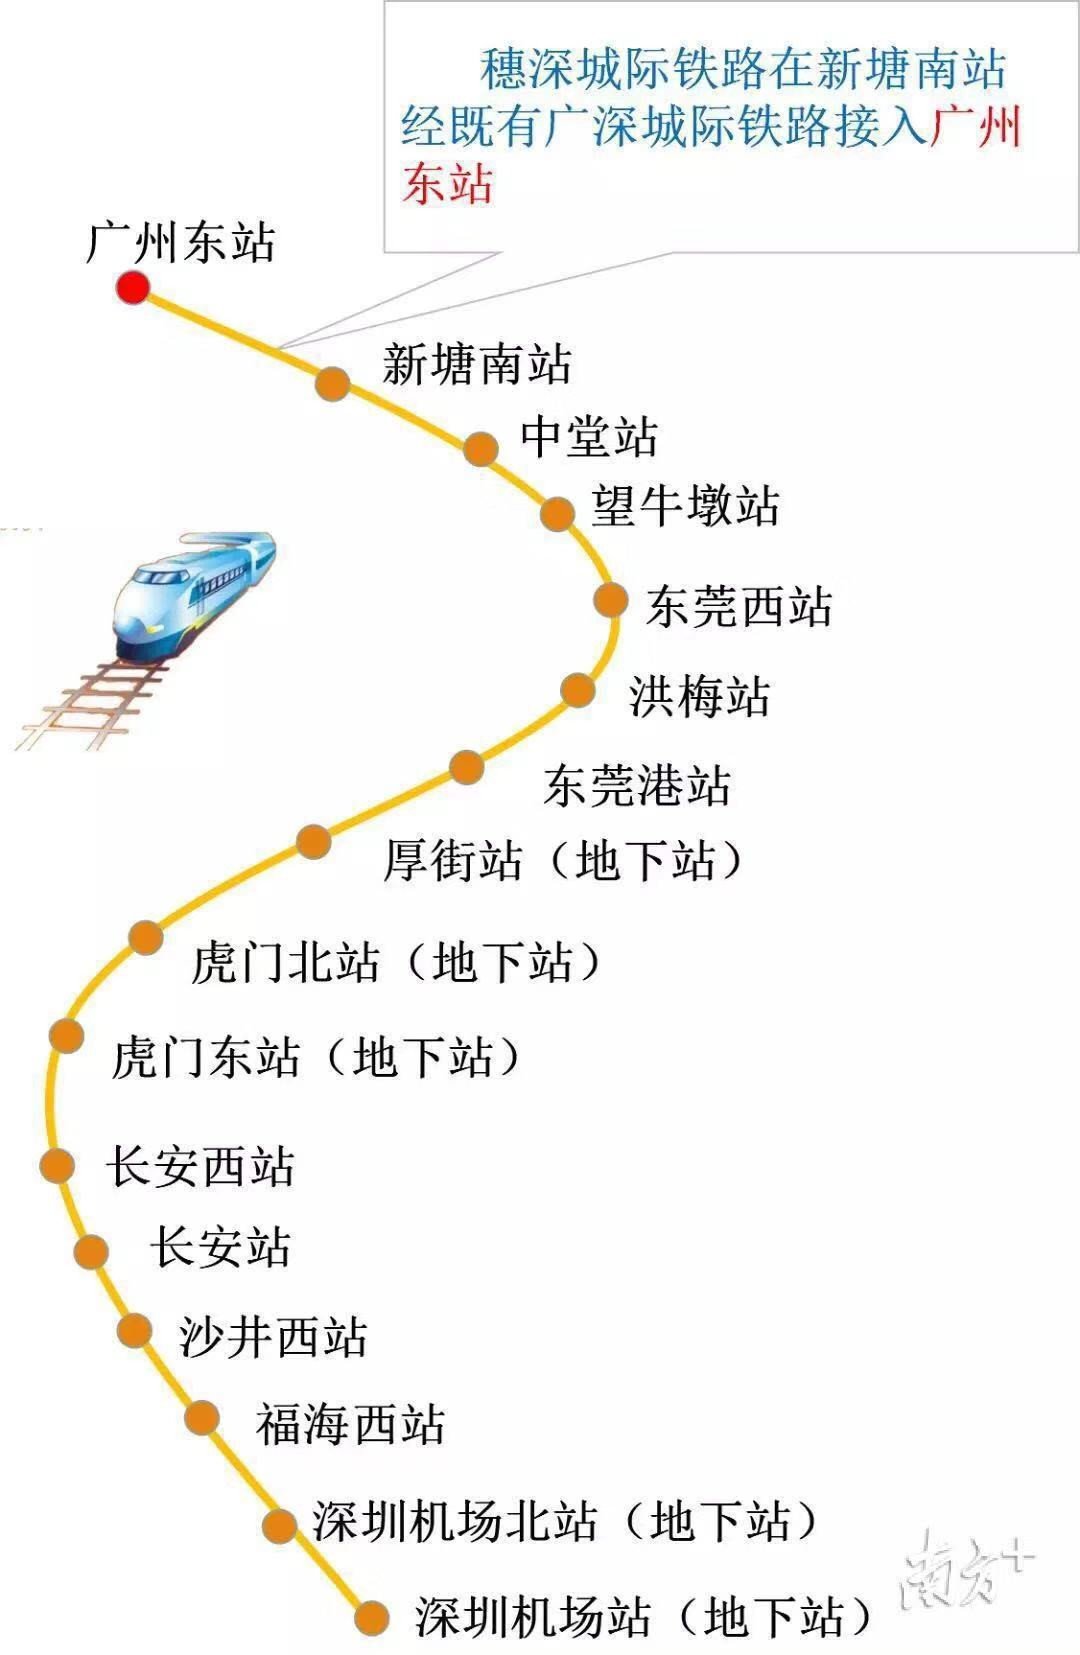 虎门东站线路轻轨图图片